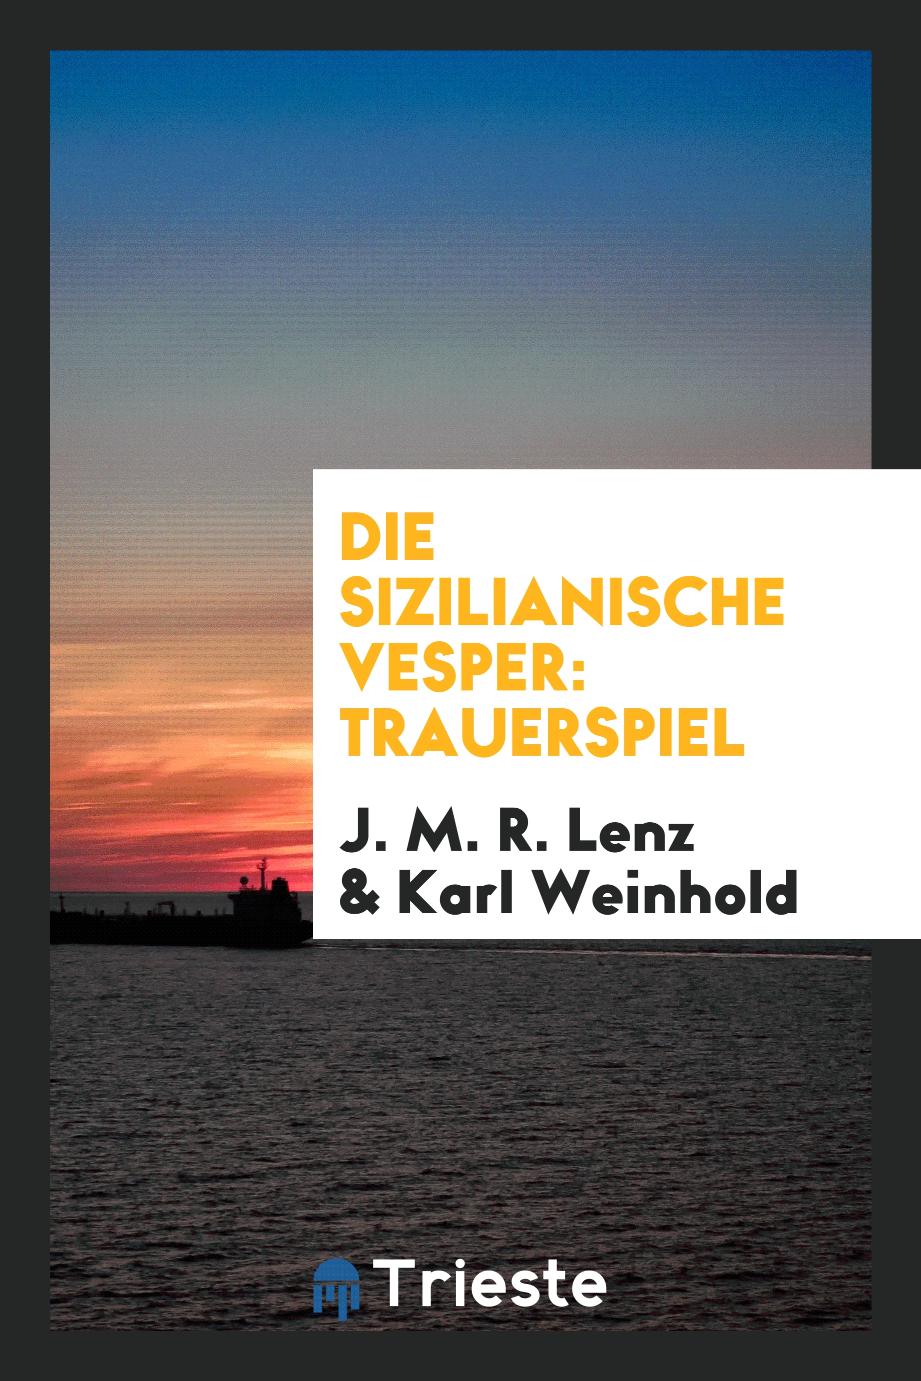 J. M. R. Lenz, Karl Weinhold - Die Sizilianische Vesper: Trauerspiel